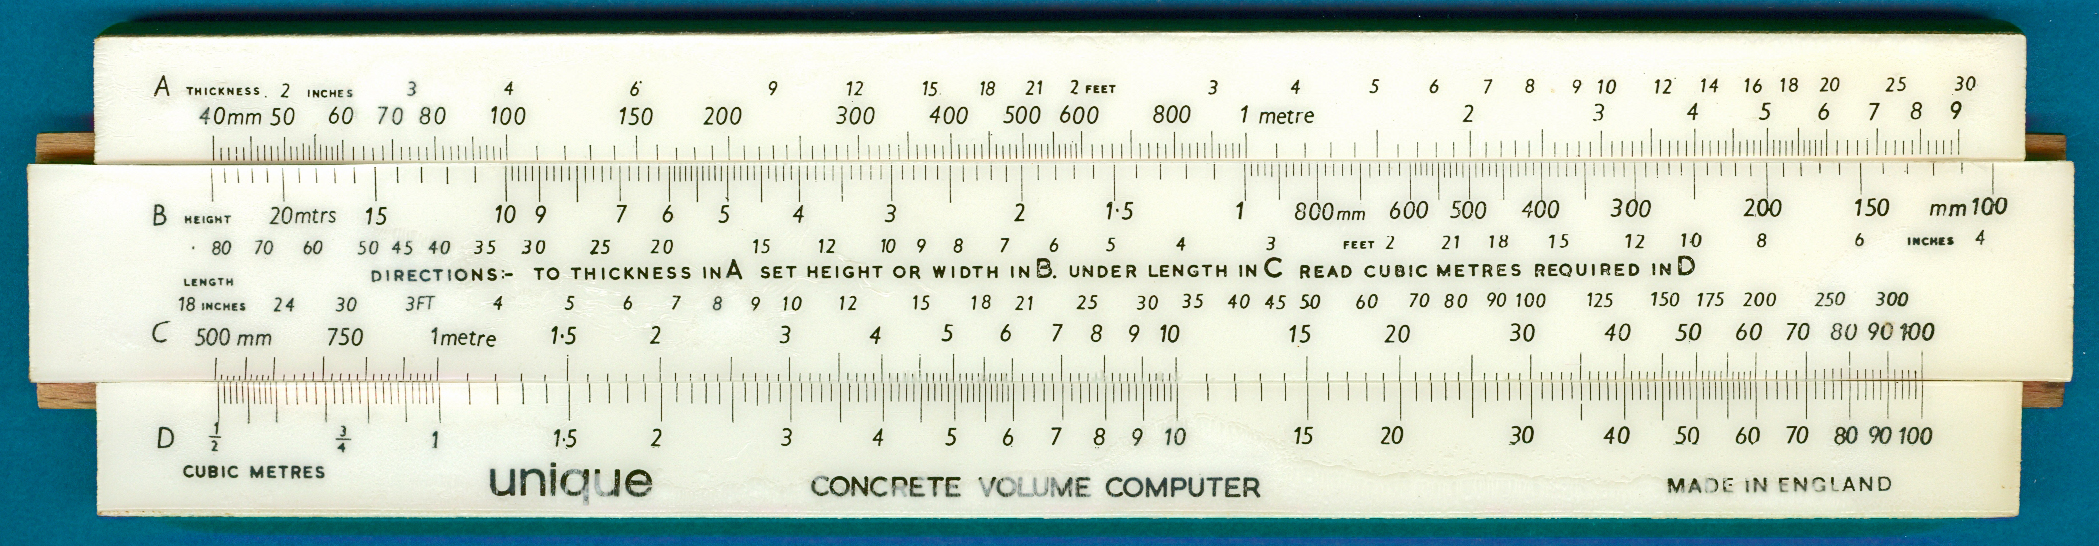 Unique Concrete Volume Computer Pocket Concrete